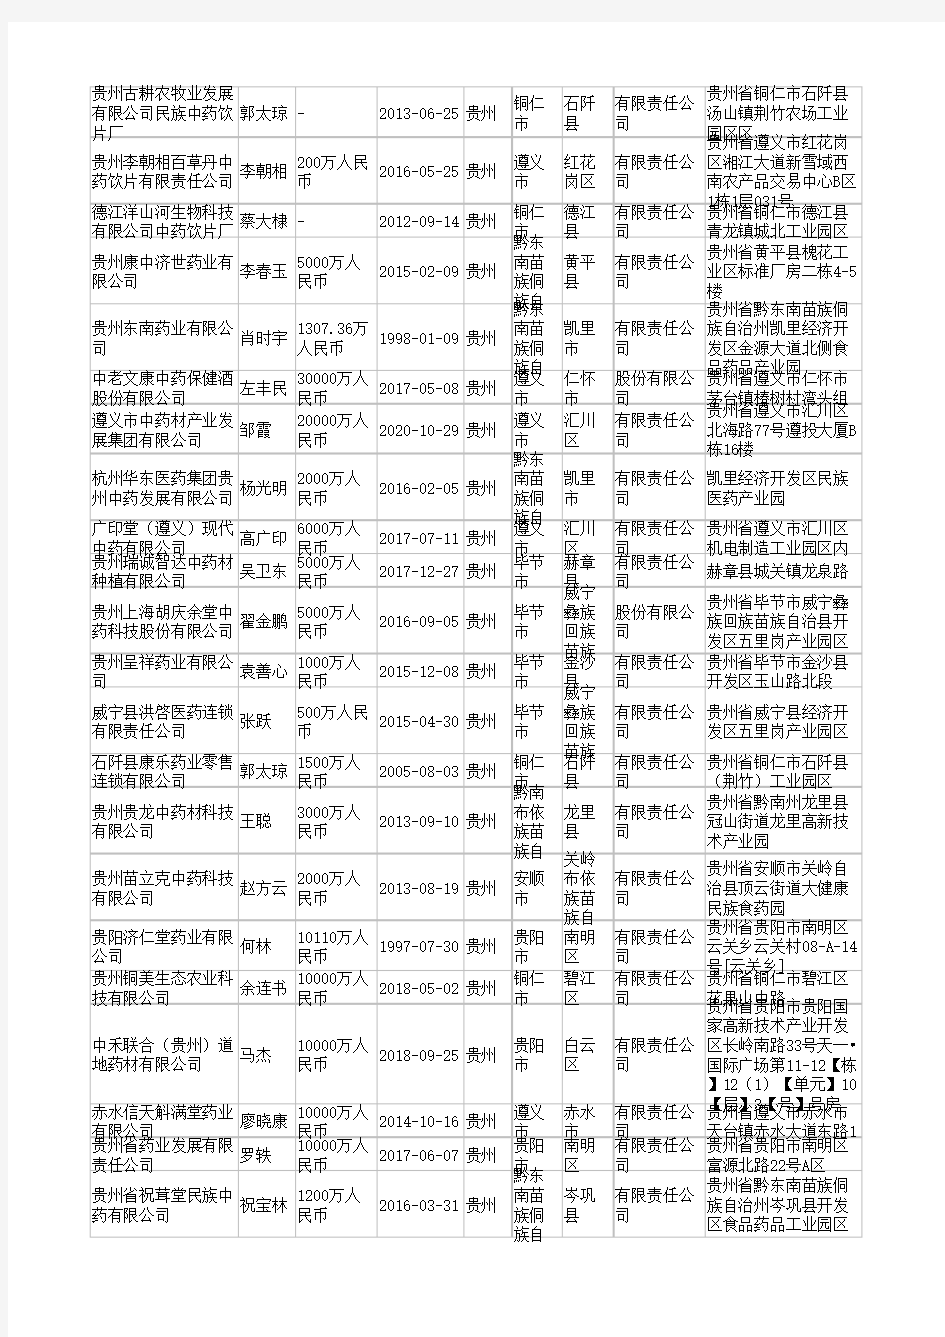 2021年贵州省中药饮片行业企业名录1517家